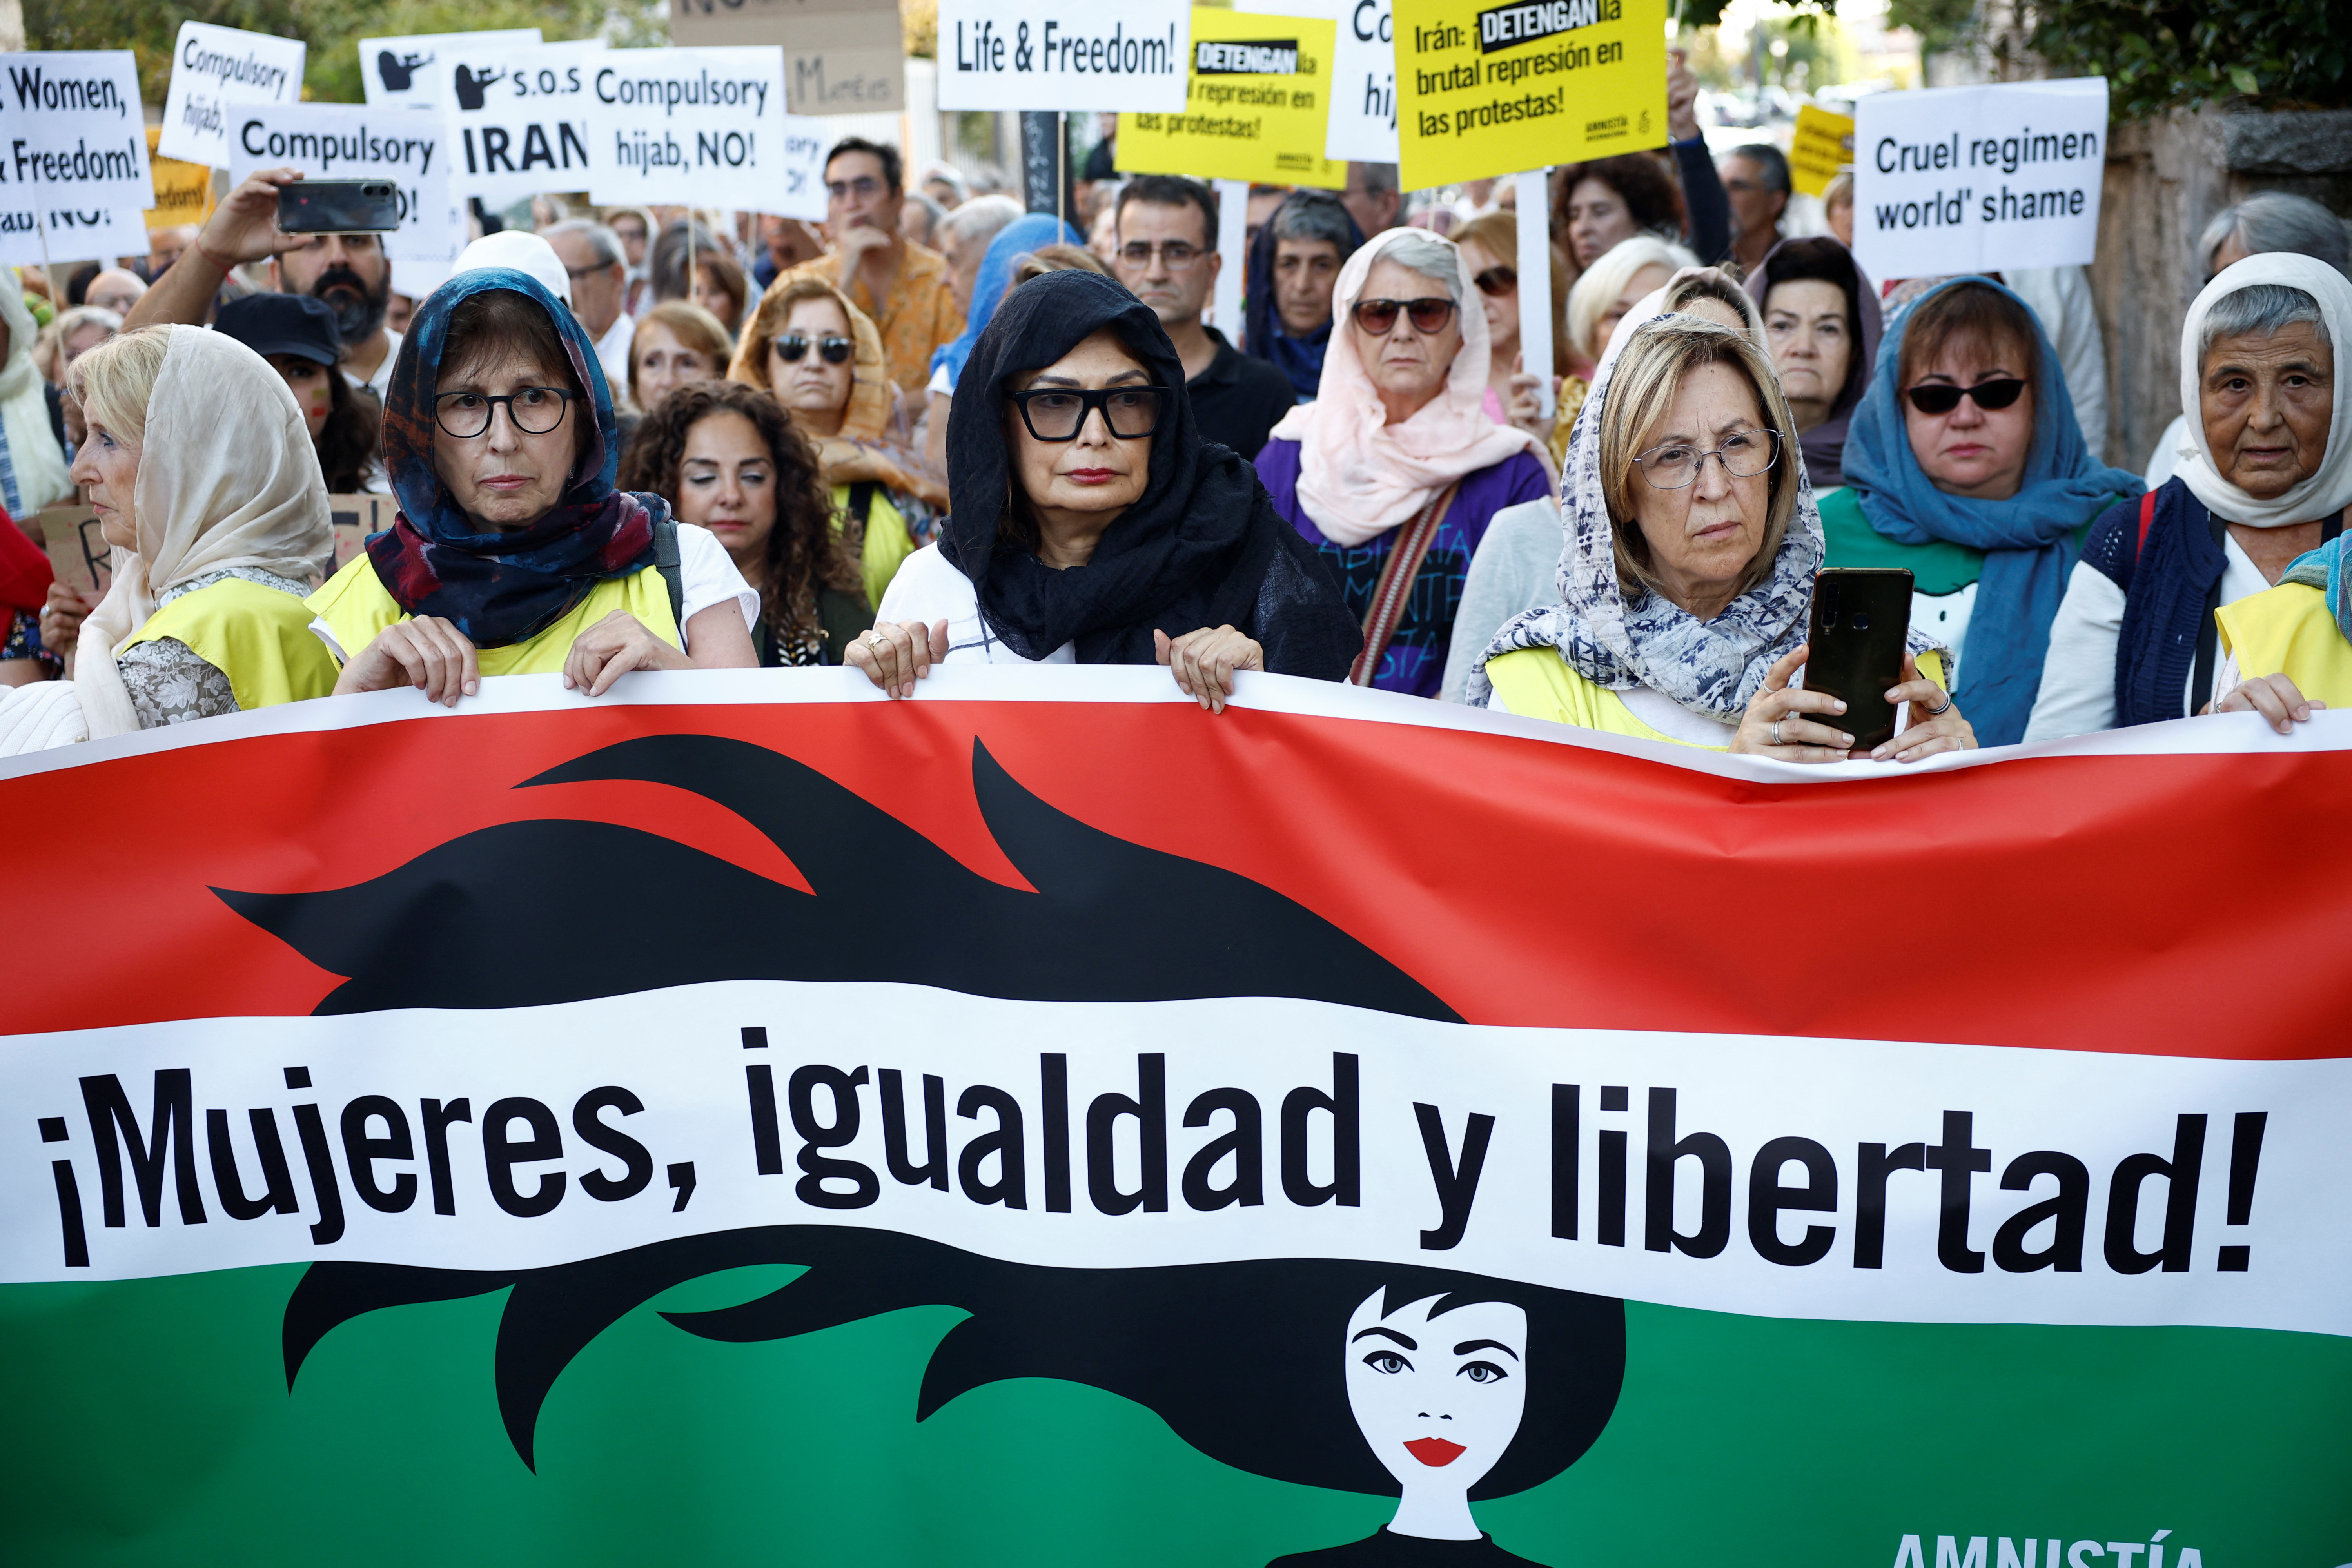 Des personnes participent à une manifestation contre le régime islamique iranien et la mort de Mahsa Amini devant l'ambassade d'Iran à Madrid, Espagne, le 6 octobre 2022.  REUTERS/Juan Médine